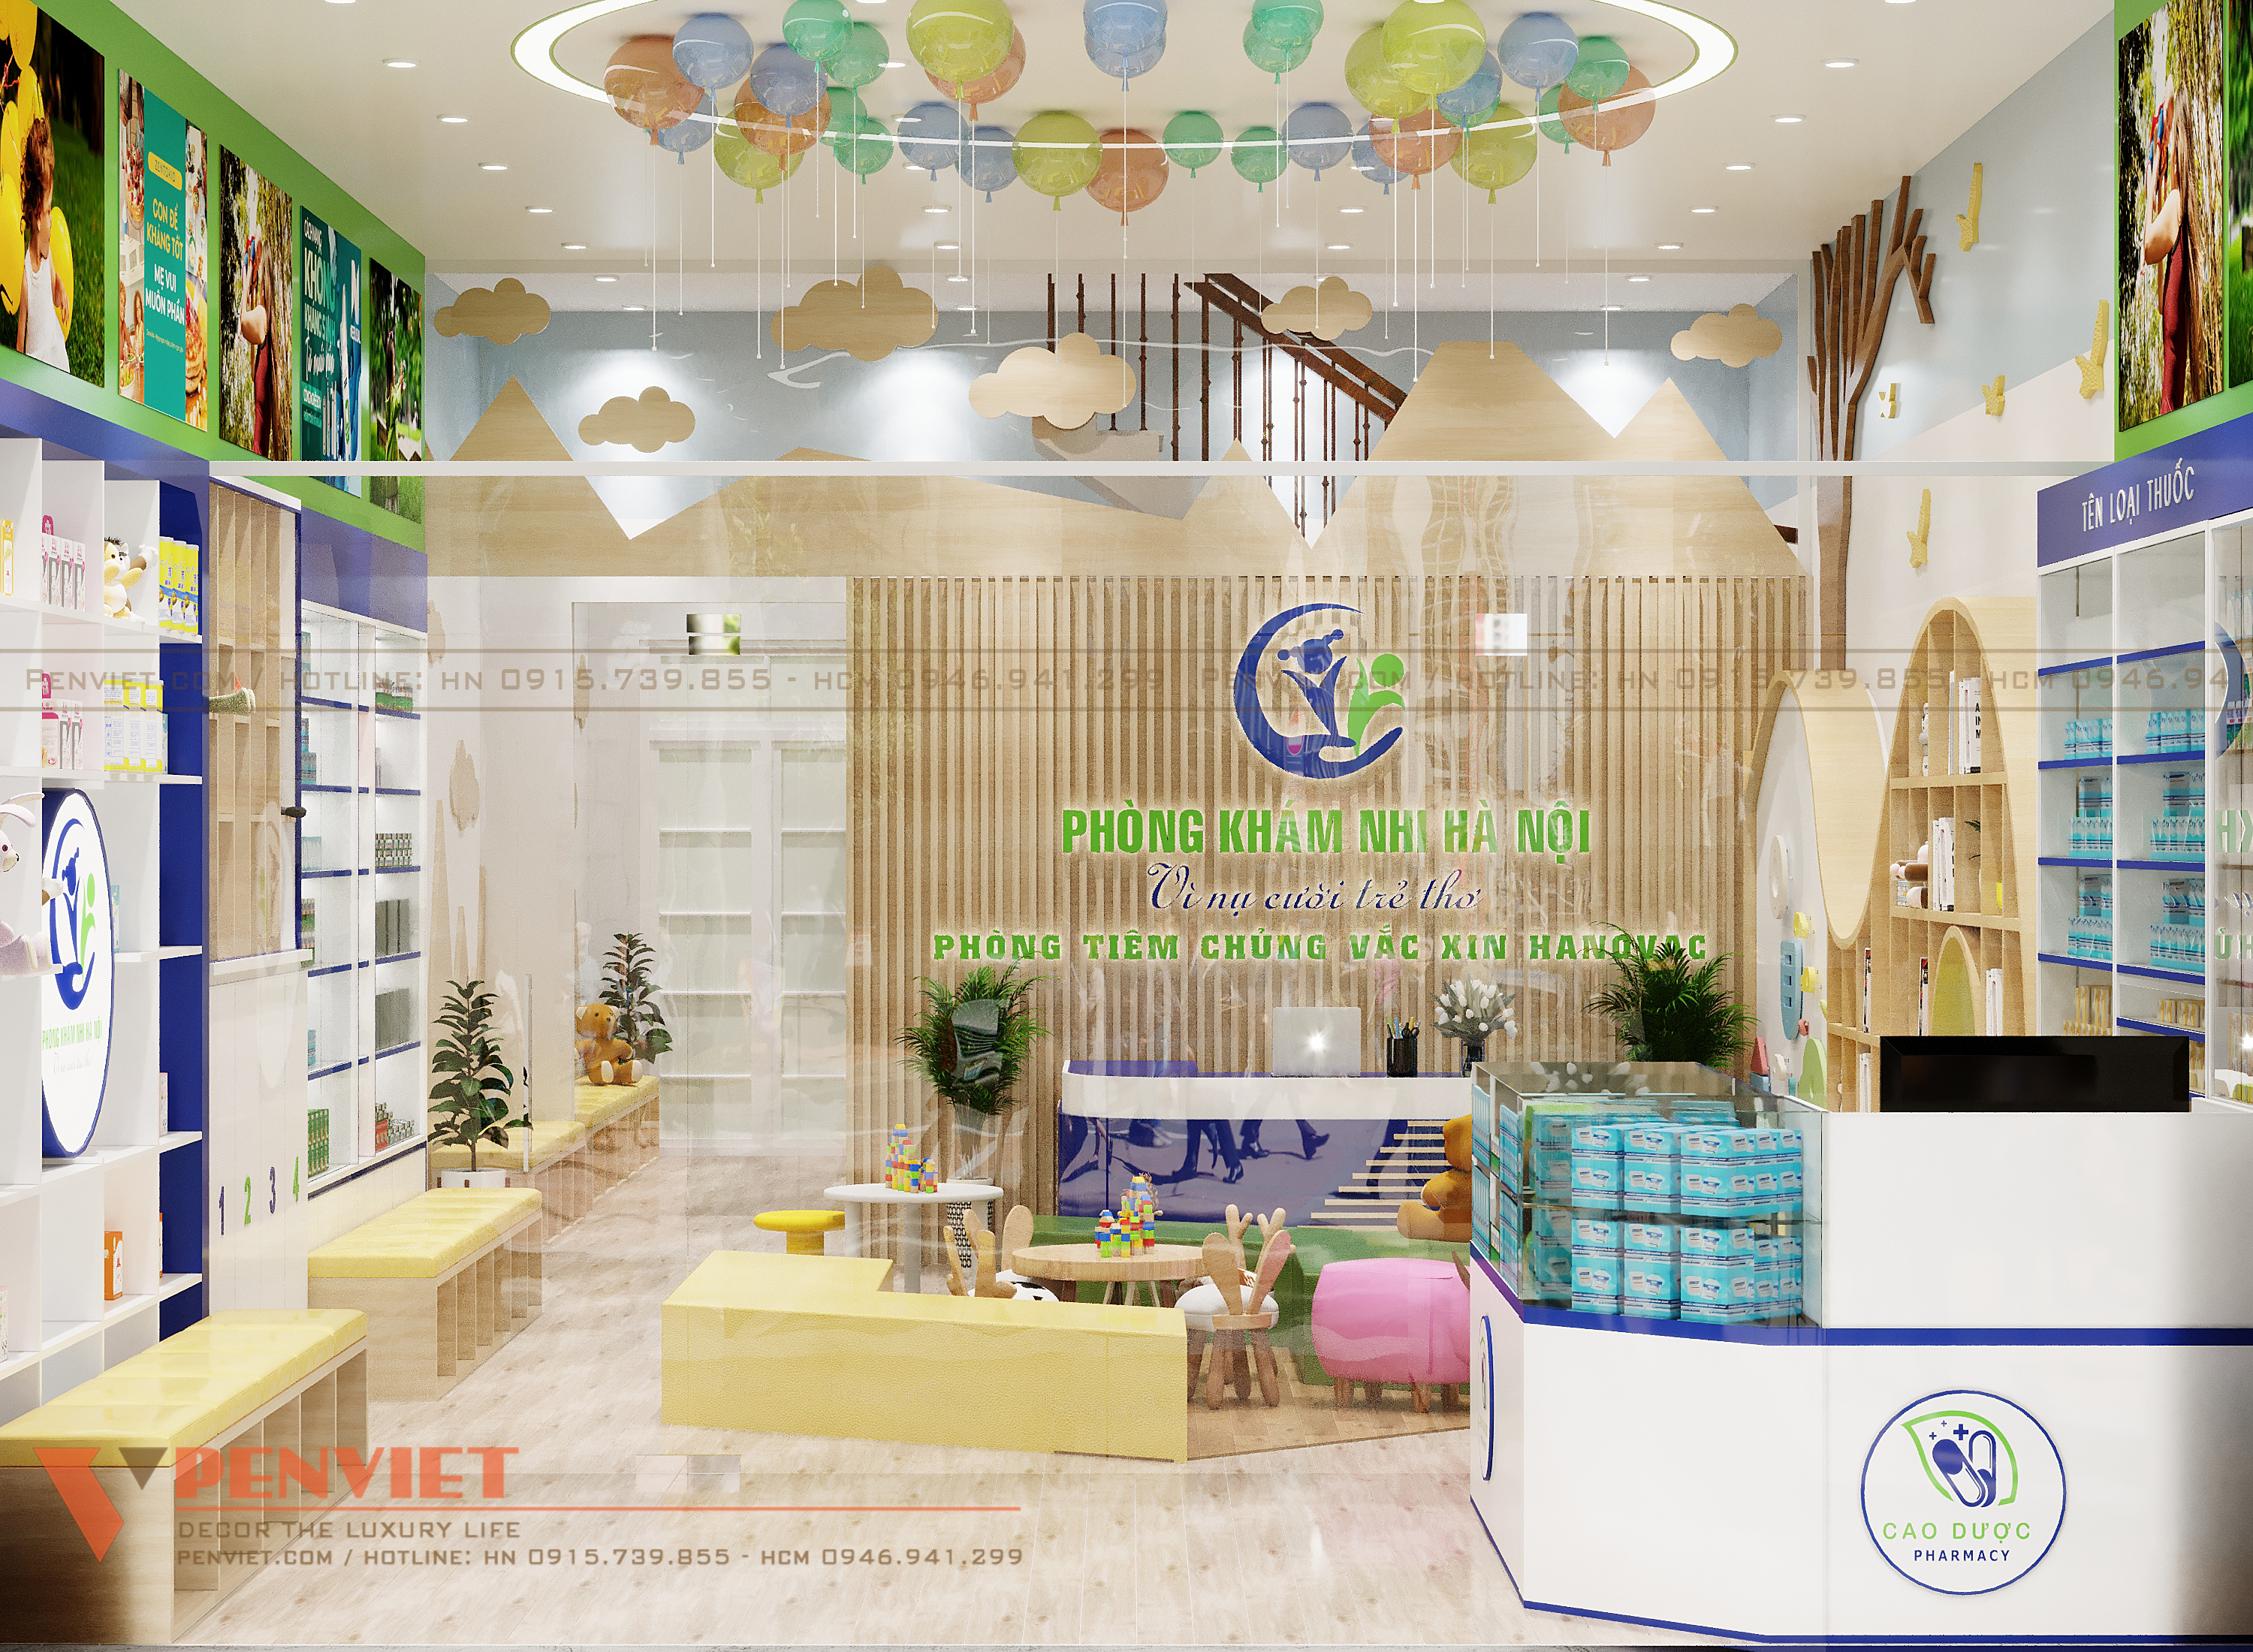 Thiết kế nội thất Shop tại Hà Nội Phong Khám Nhi Khoa Hà Nội 1665525830 14